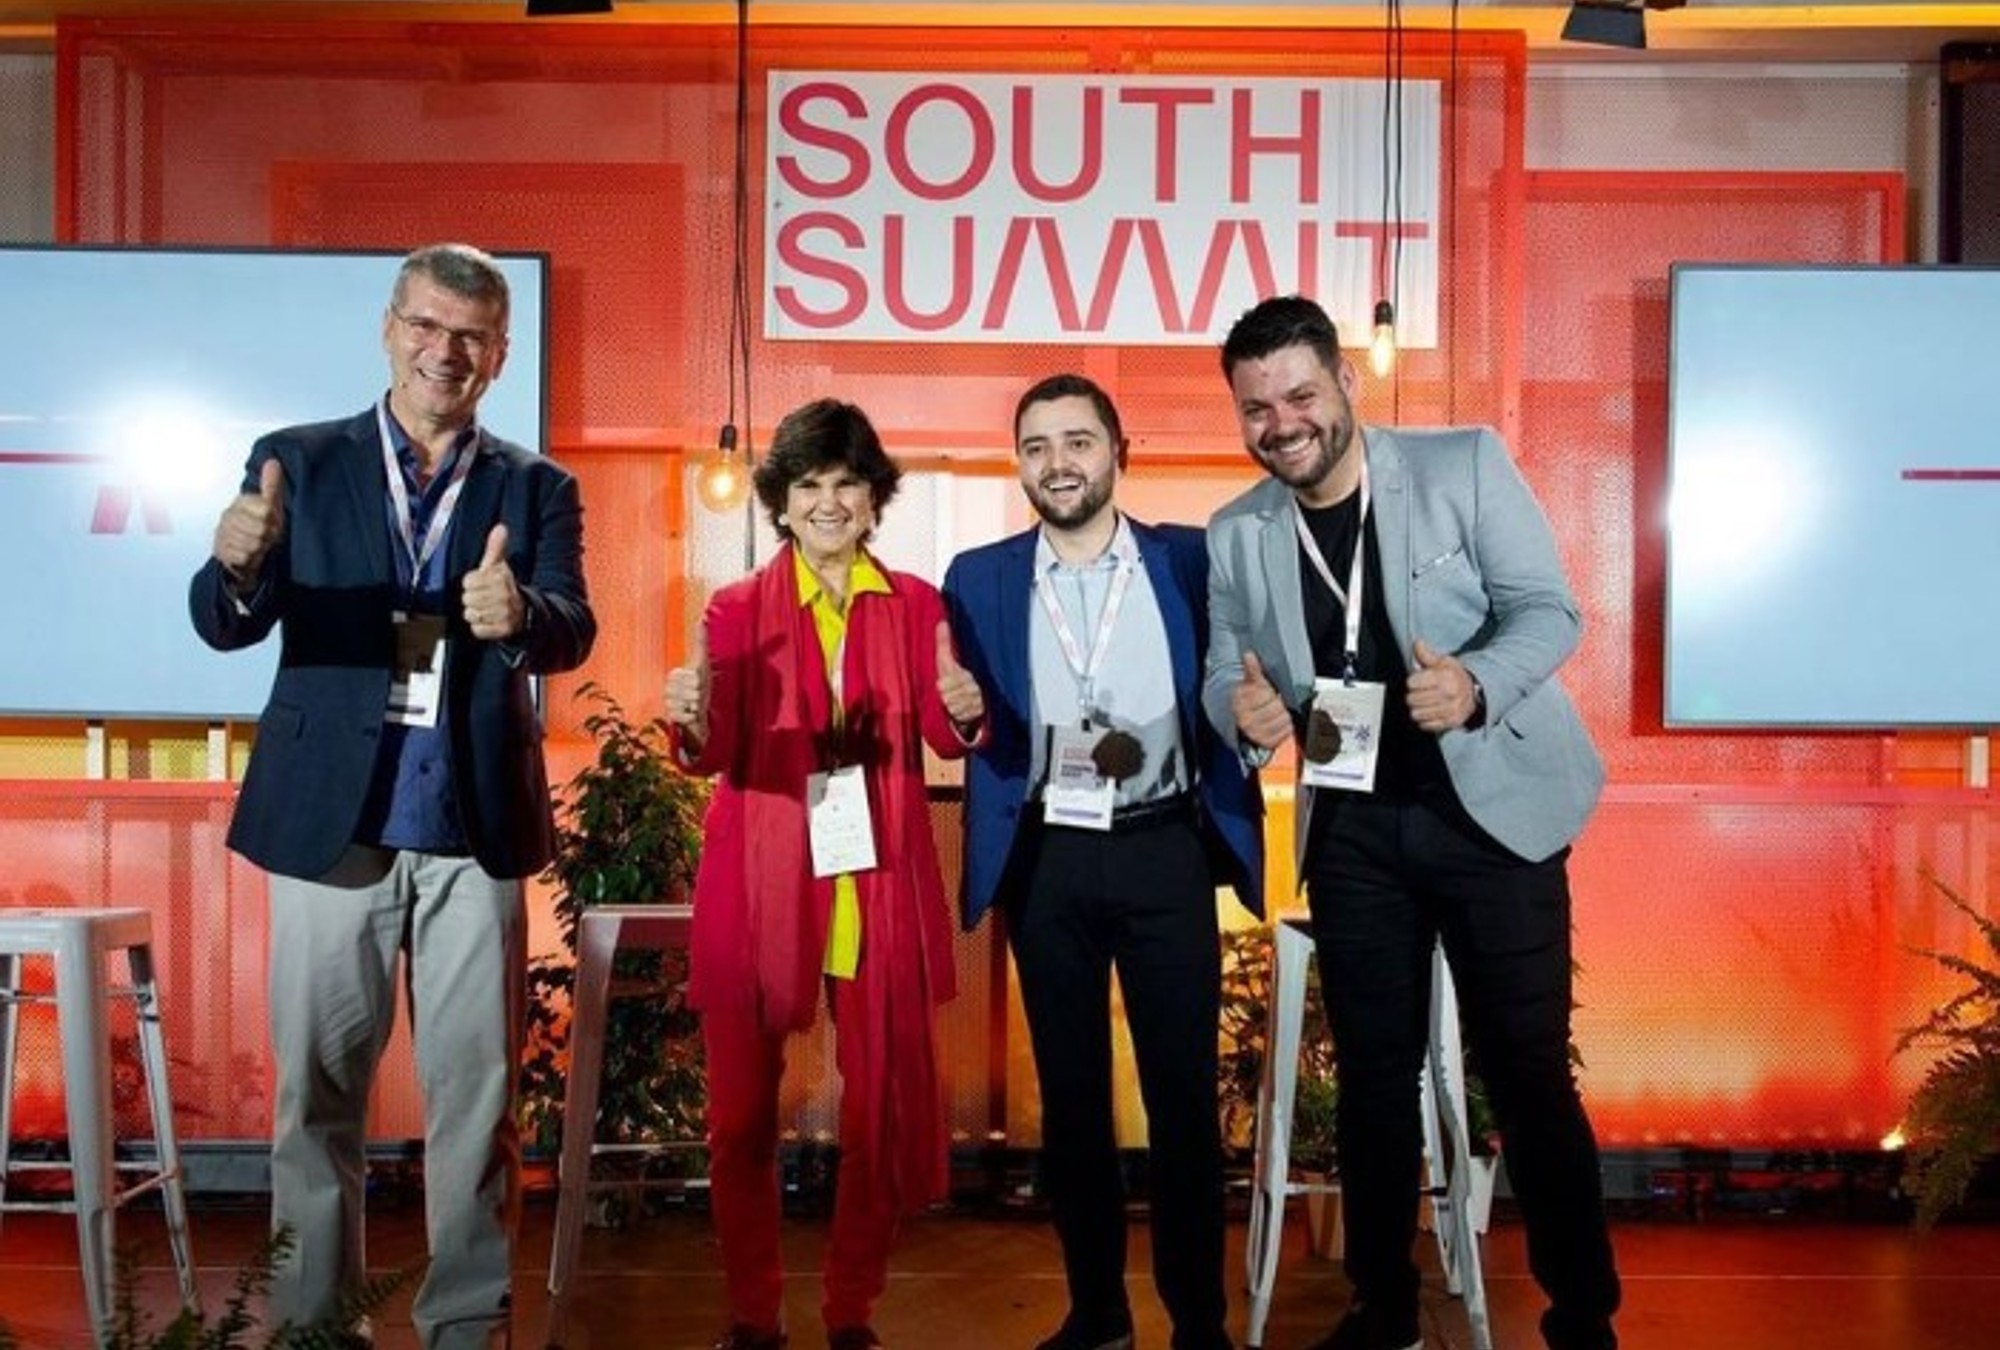 South Summit Brazil se celebrará entre el 20 y 22 de marzo en Porto Alegre.